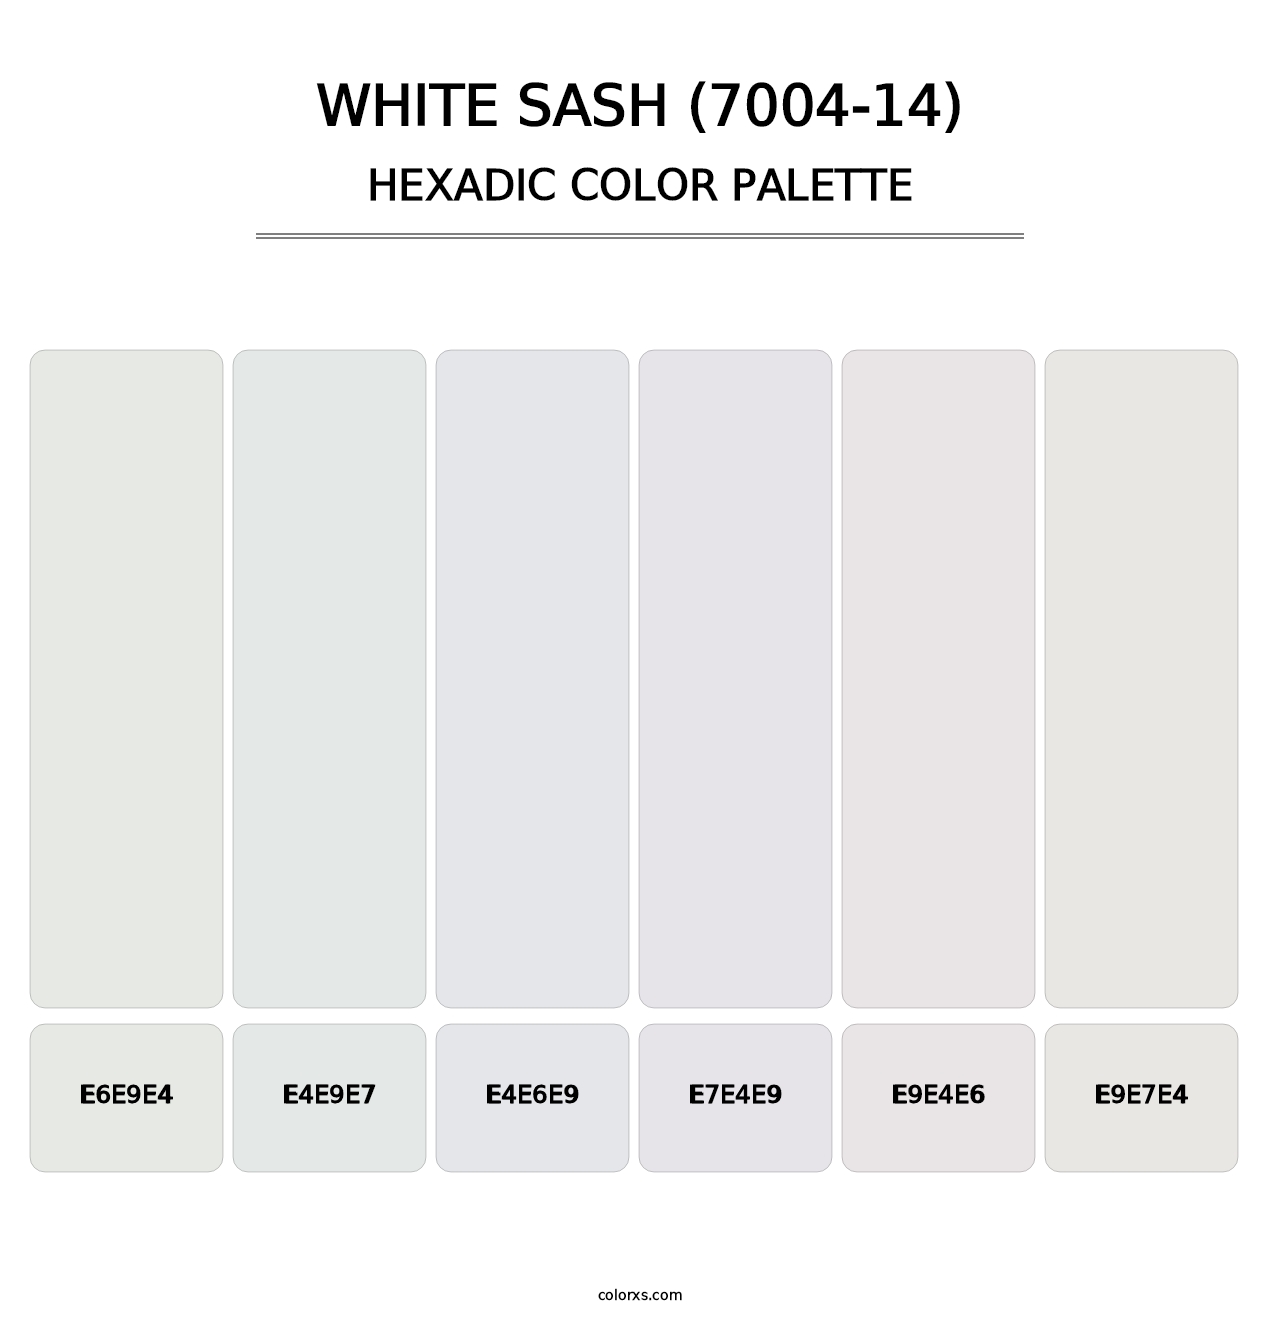 White Sash (7004-14) - Hexadic Color Palette